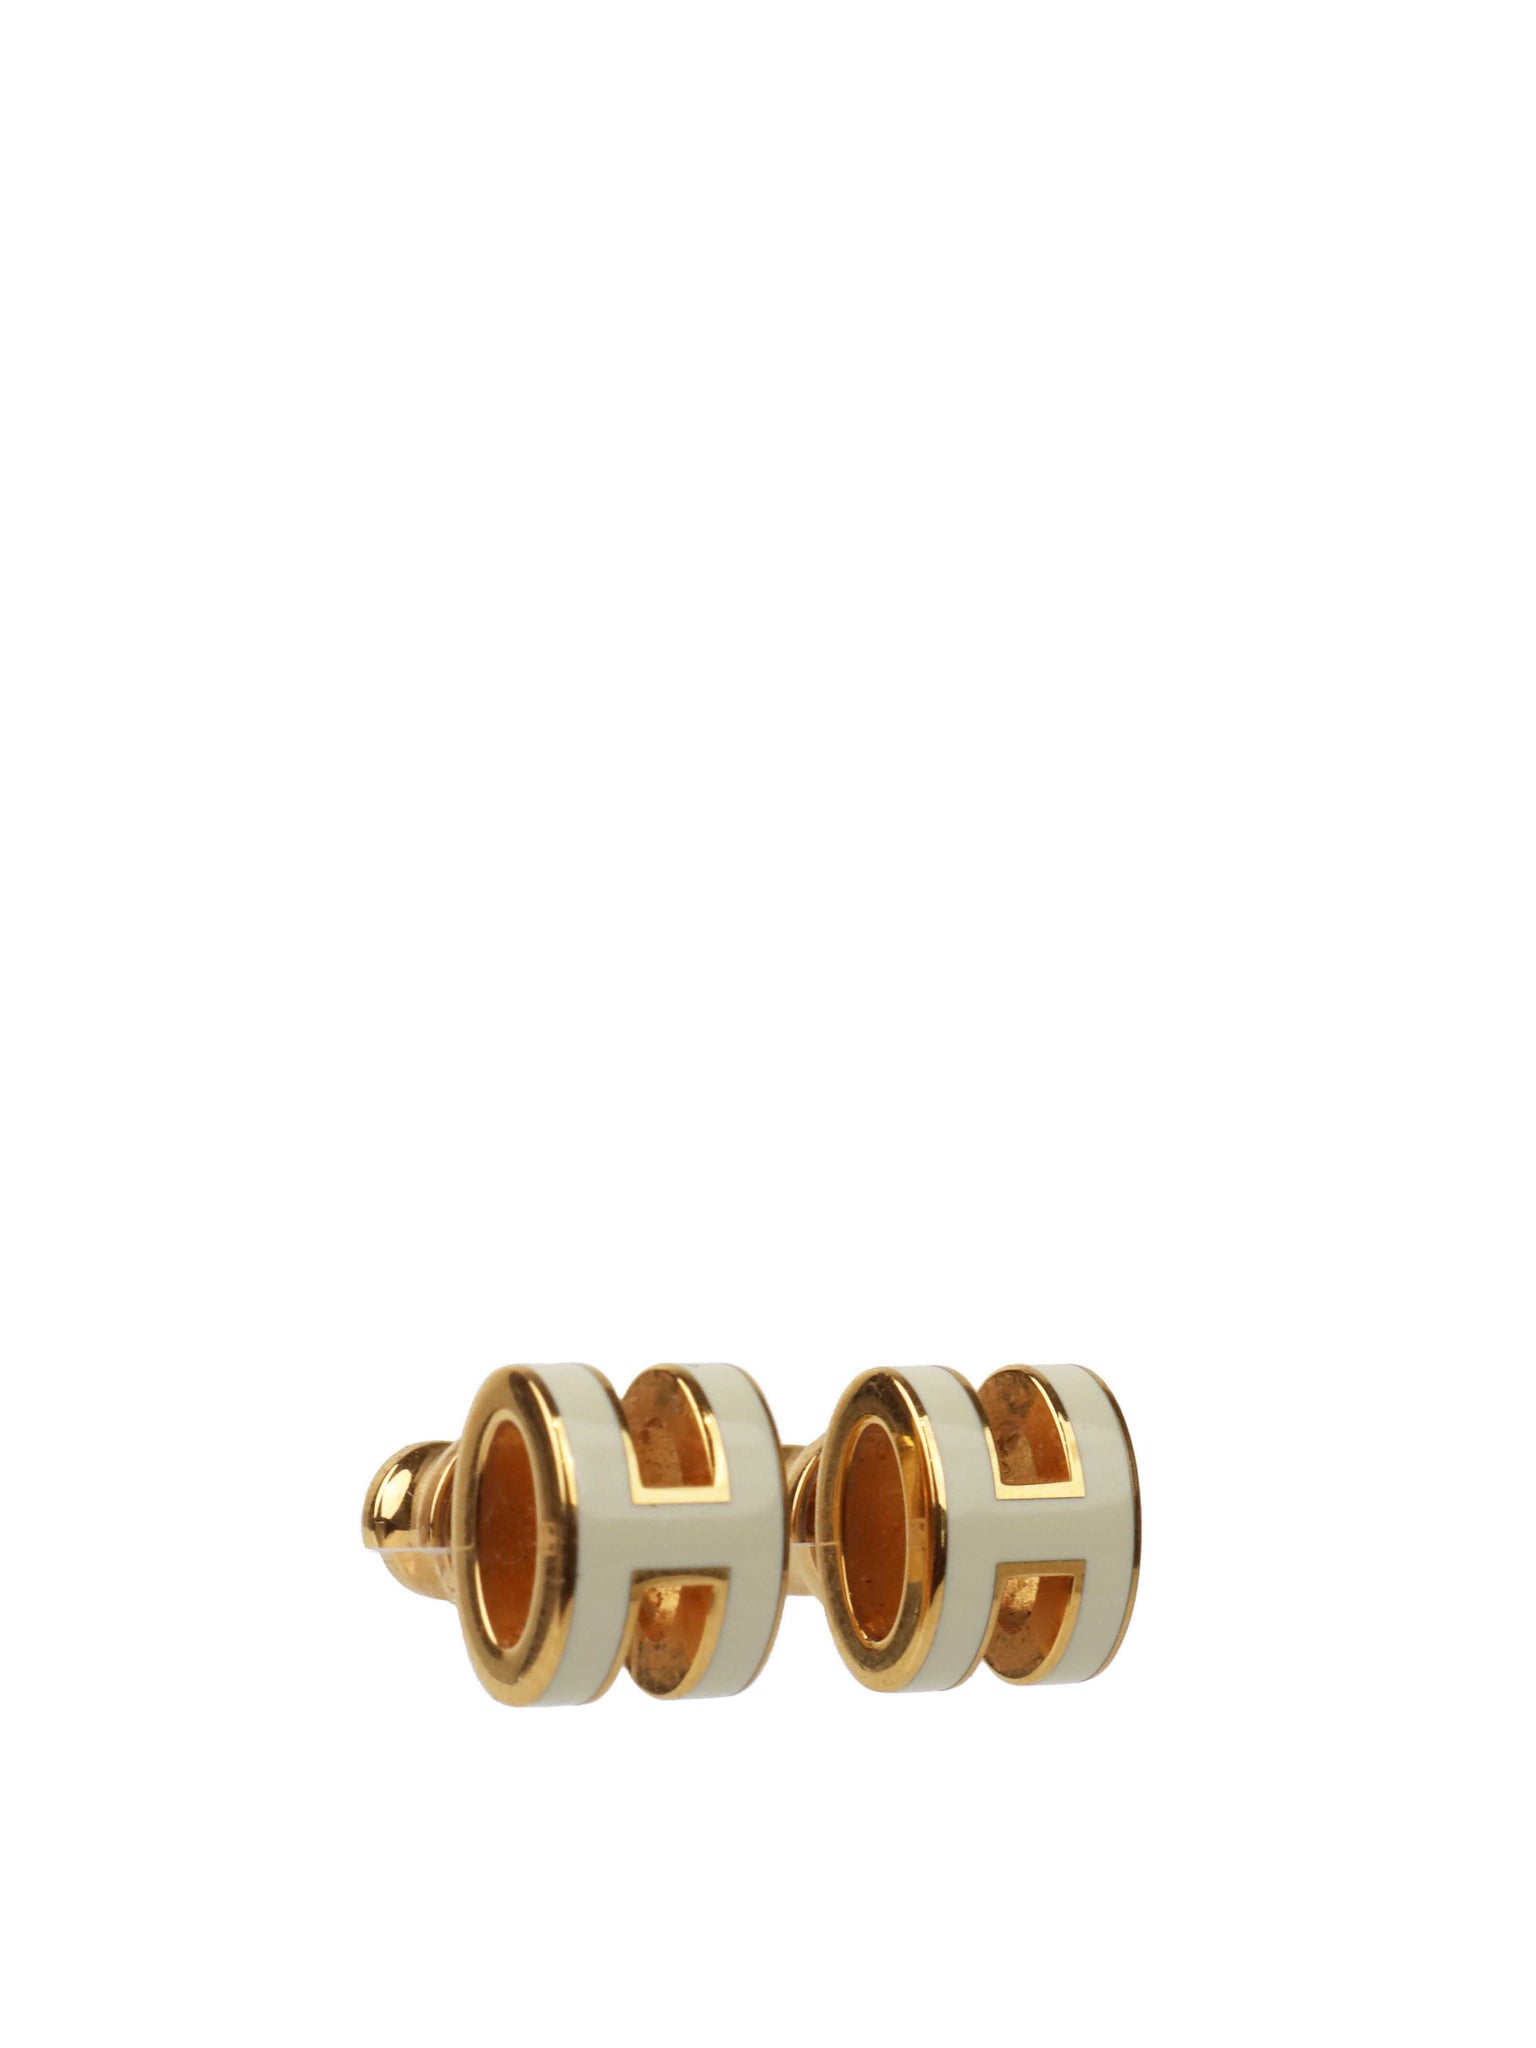 Louis Vuitton Gold Bionic Earrings – Votre Luxe